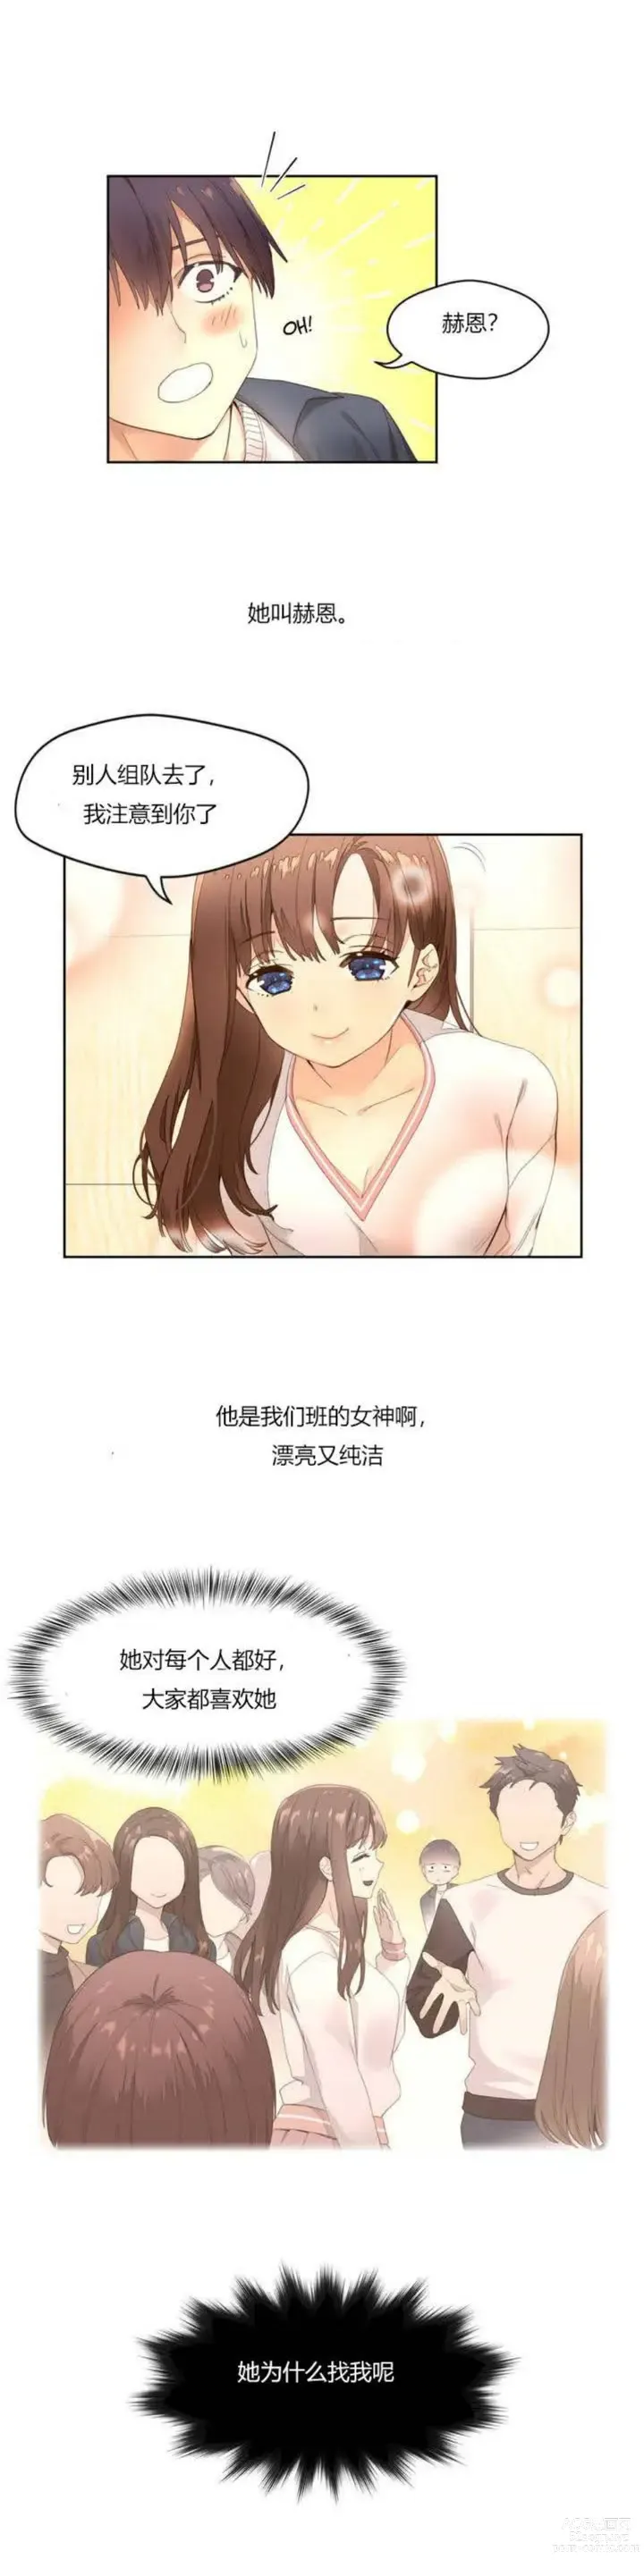 Page 5 of manga 秘香／費洛蒙香水／Pheromone Holic